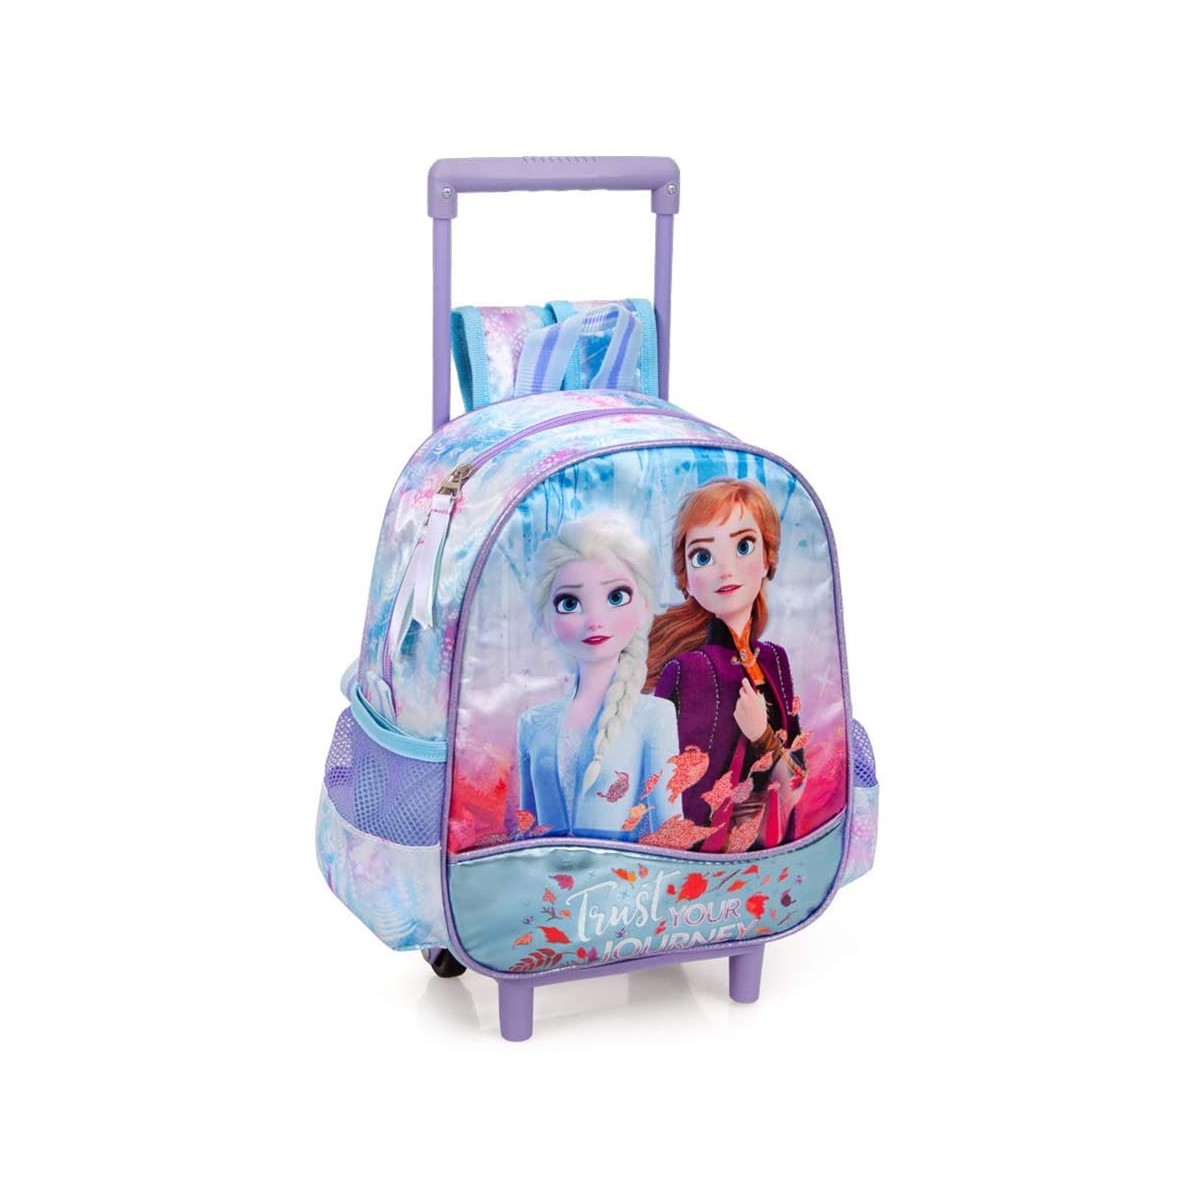 Zaino scuola con trolley tema Frozen II, con manubrio a scomparsa